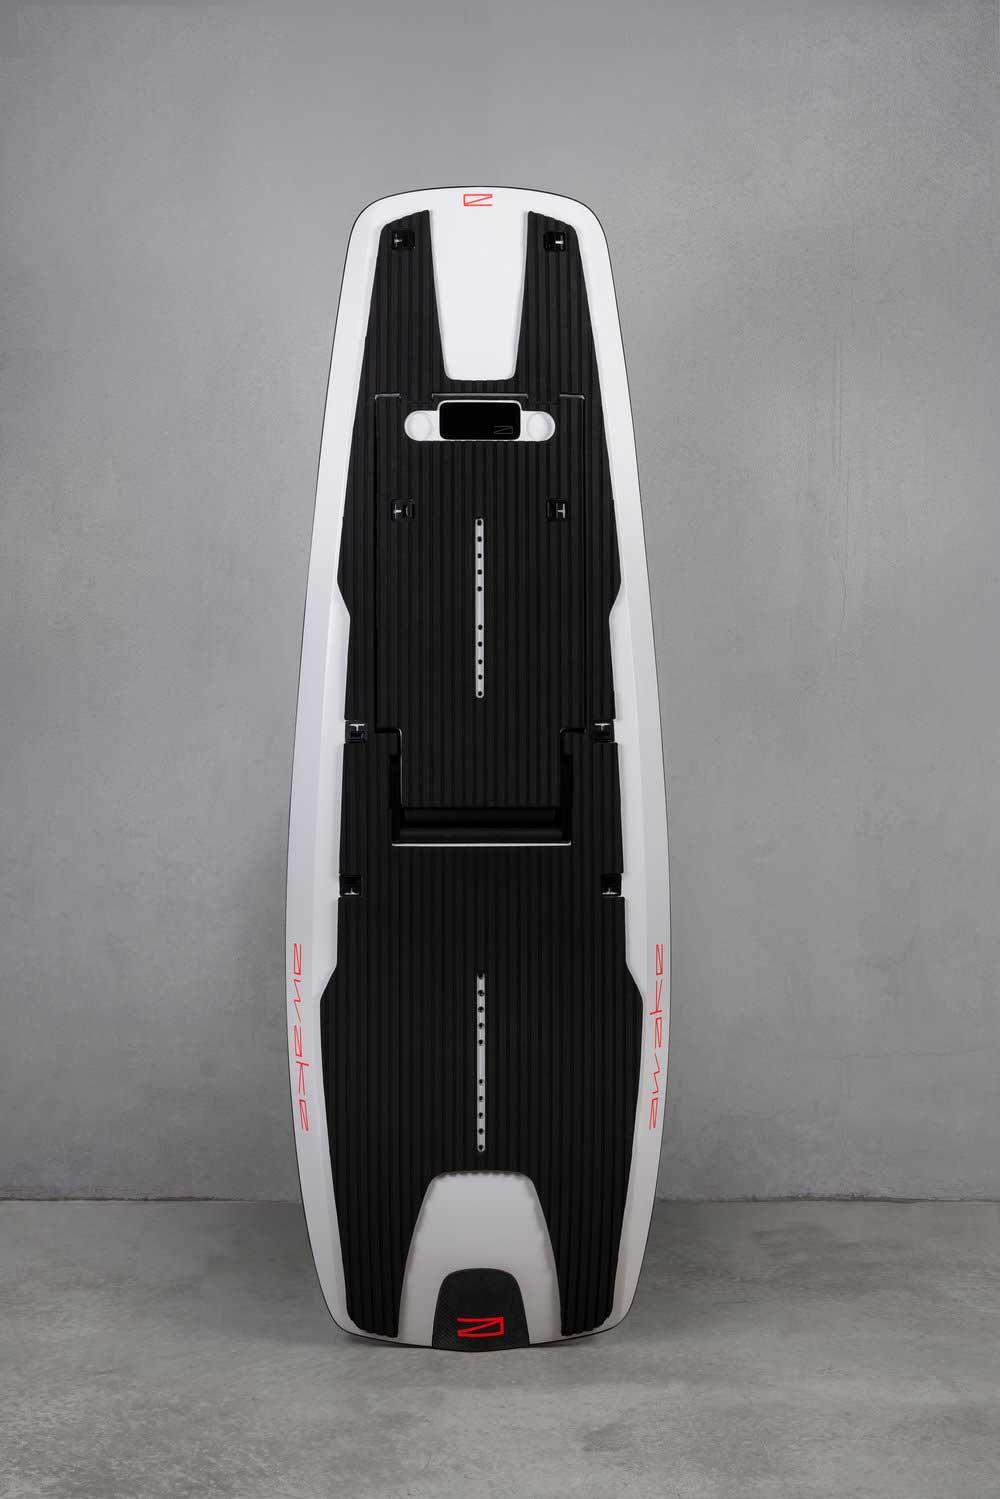 Met deze elektrische surfplank kun je surfen over iedere plas water, zonder dat je er golven of wind voor nodig hebt. En da's best geinig.